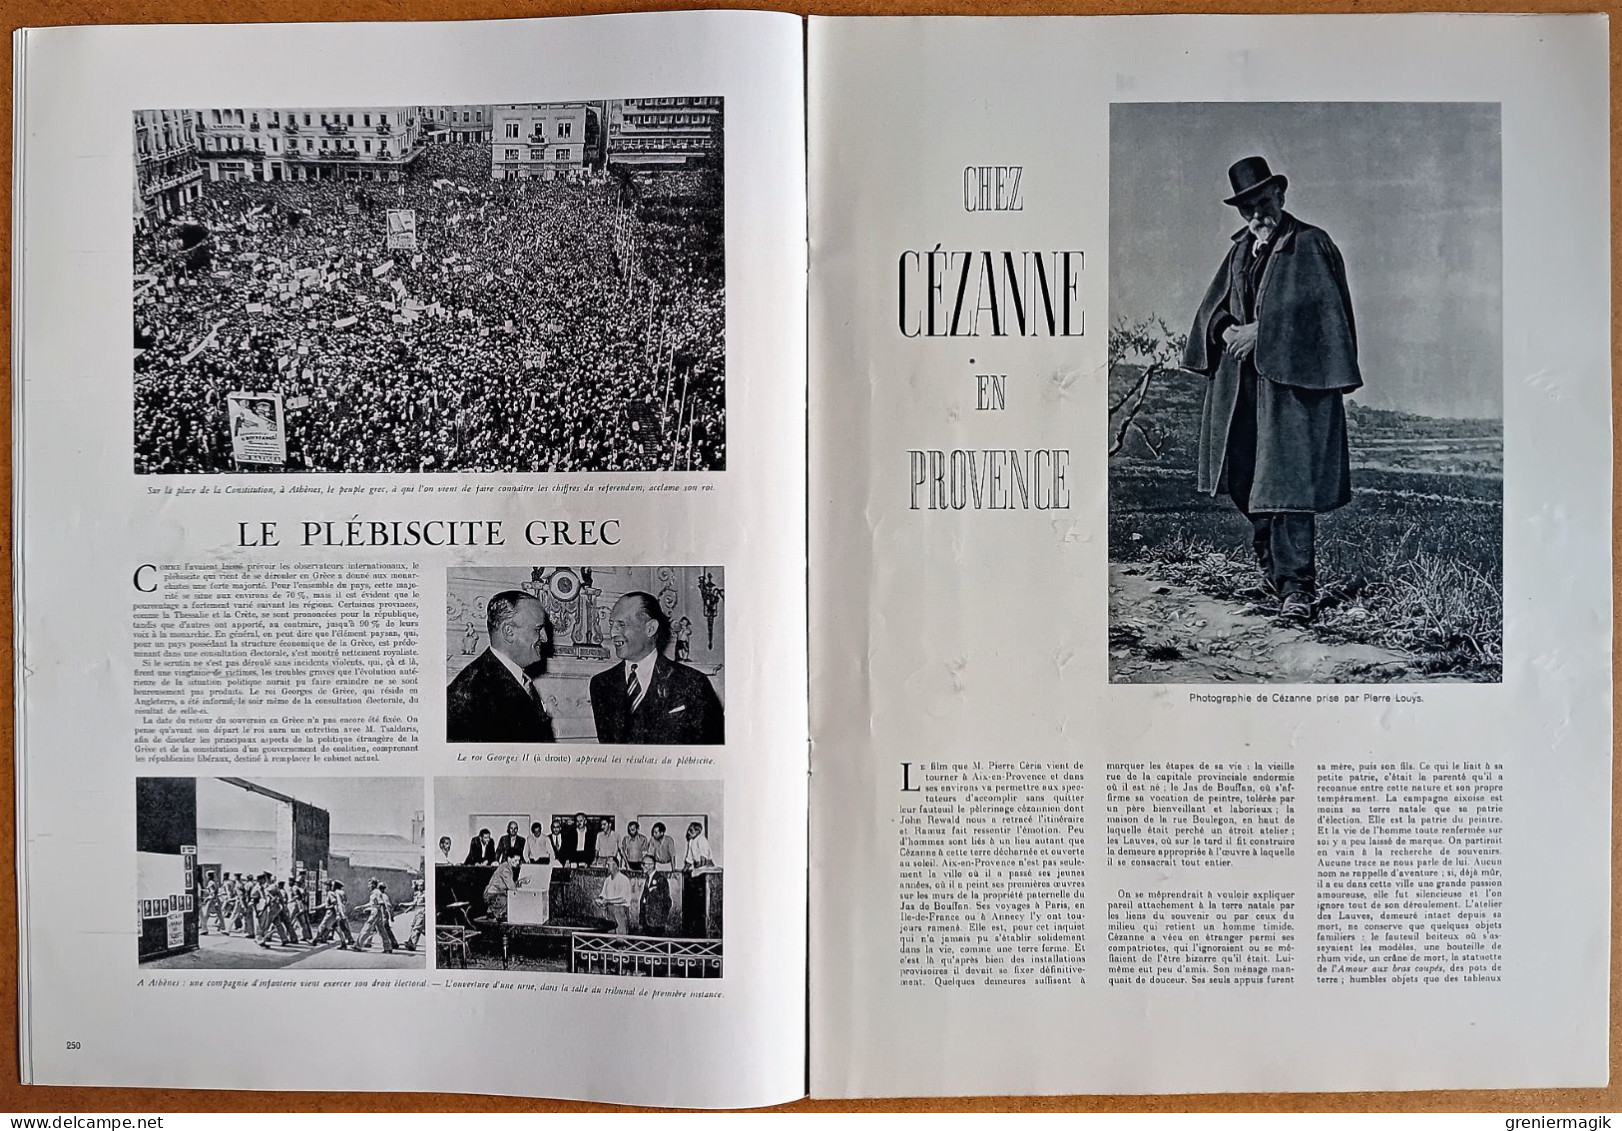 France Illustration N°50 14/09/1946 Herriot/Maroc/Le vin/Le plébiscite grec/Cézanne en Provence/Biarritz/Victoria Regia